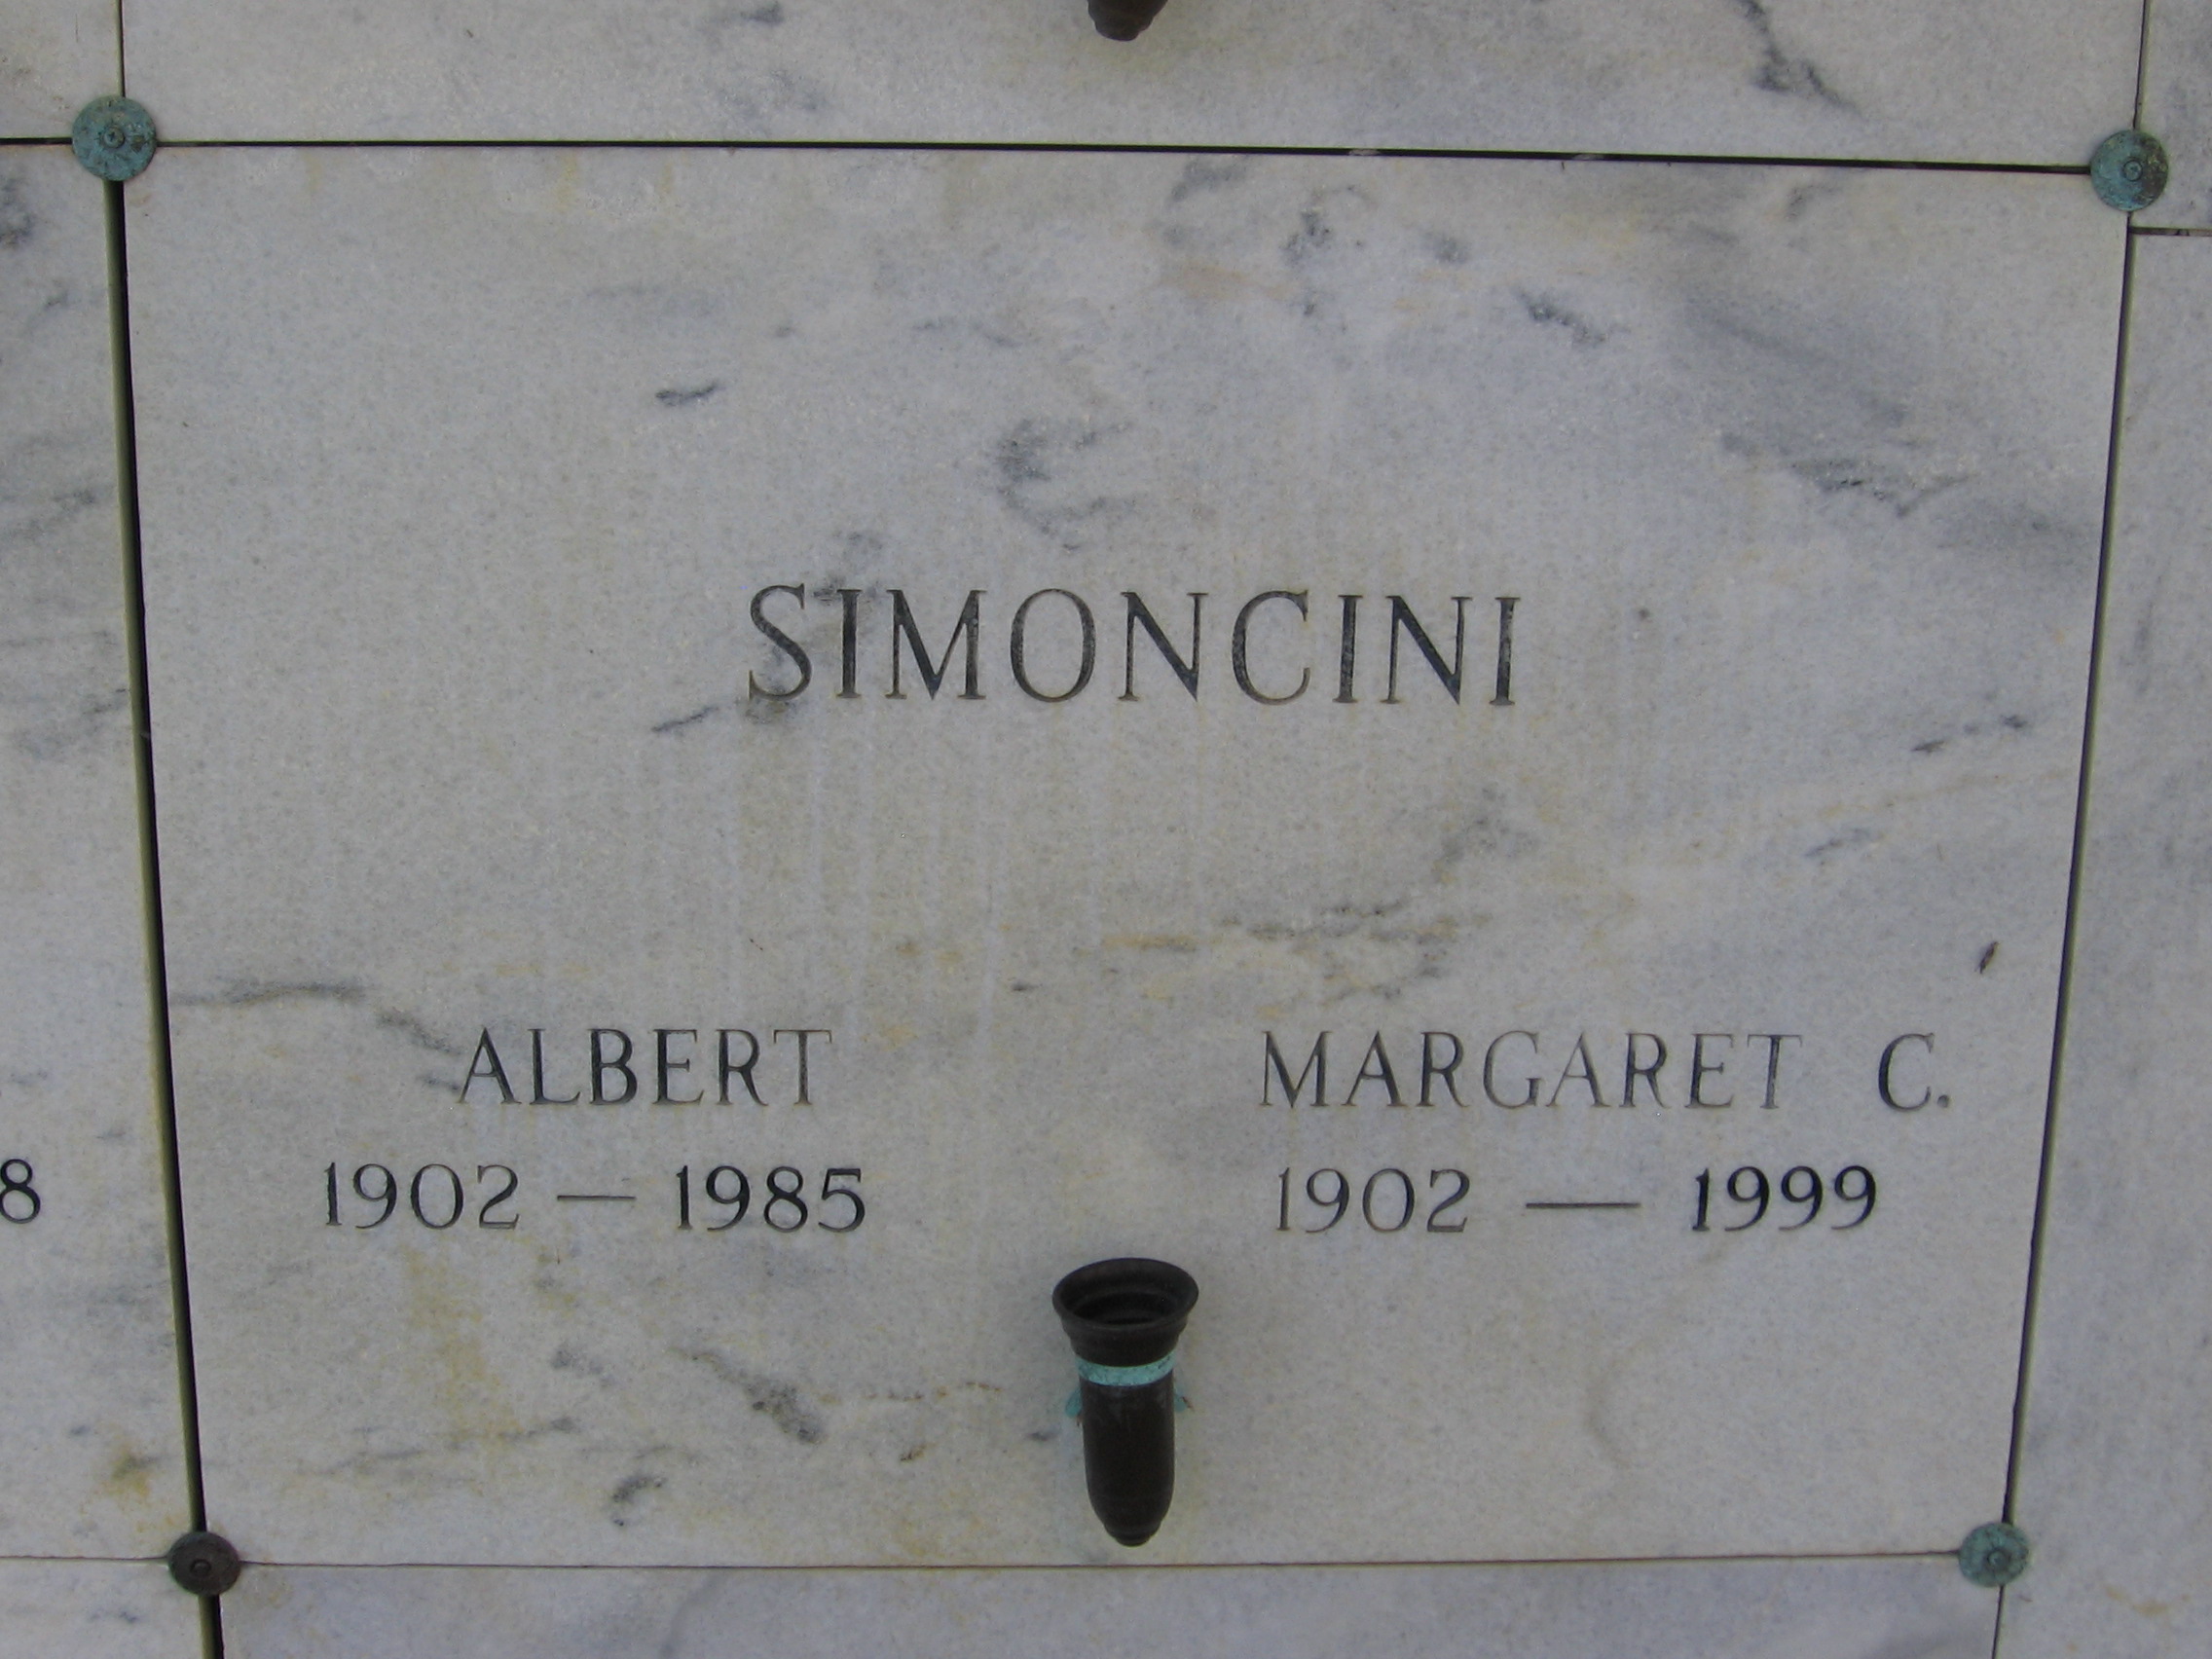 Albert Simoncini